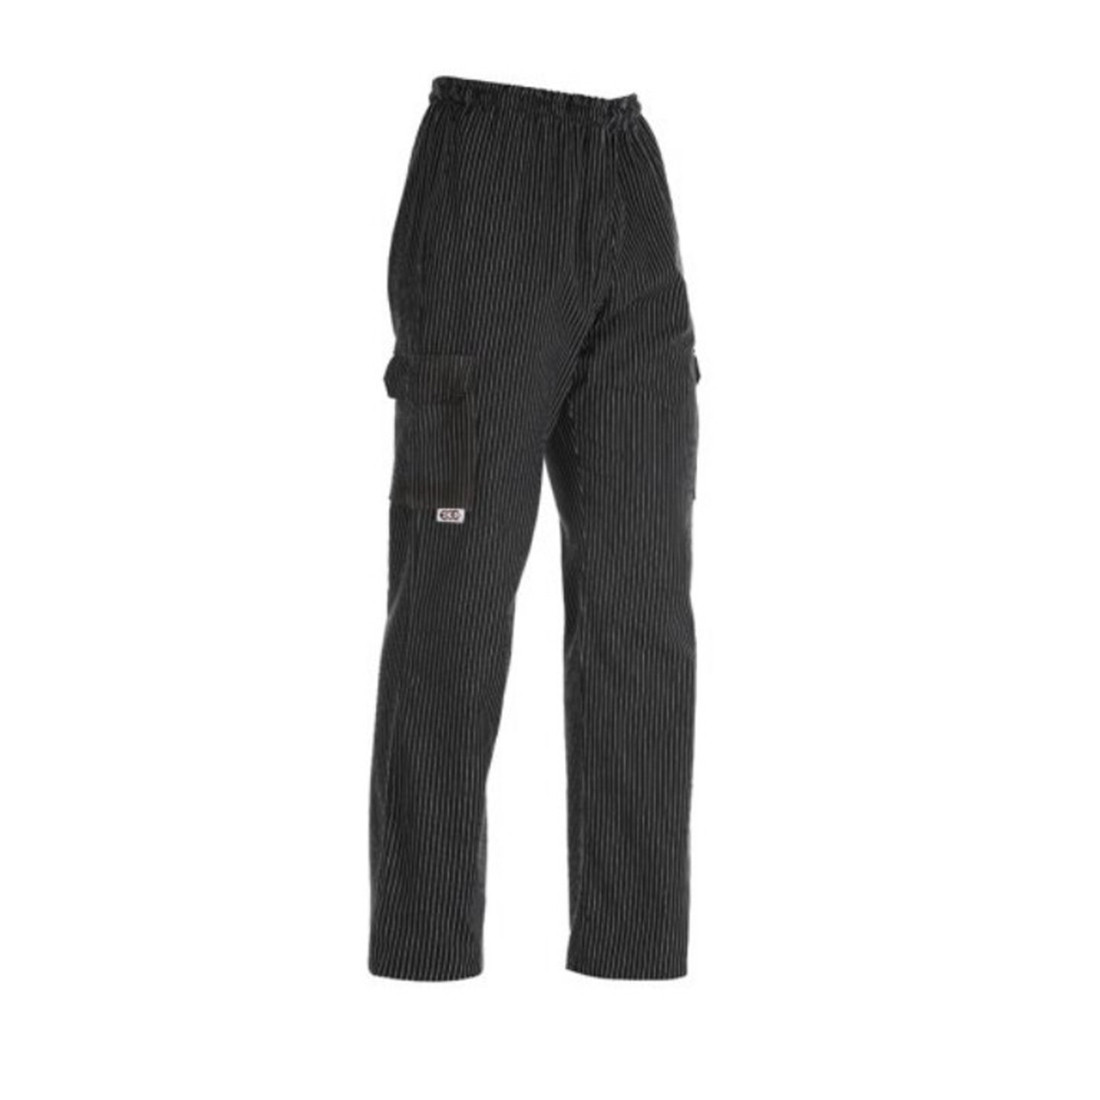 Pantalón Coulisse Leg Pocket, 100% algodón - Ropa de protección